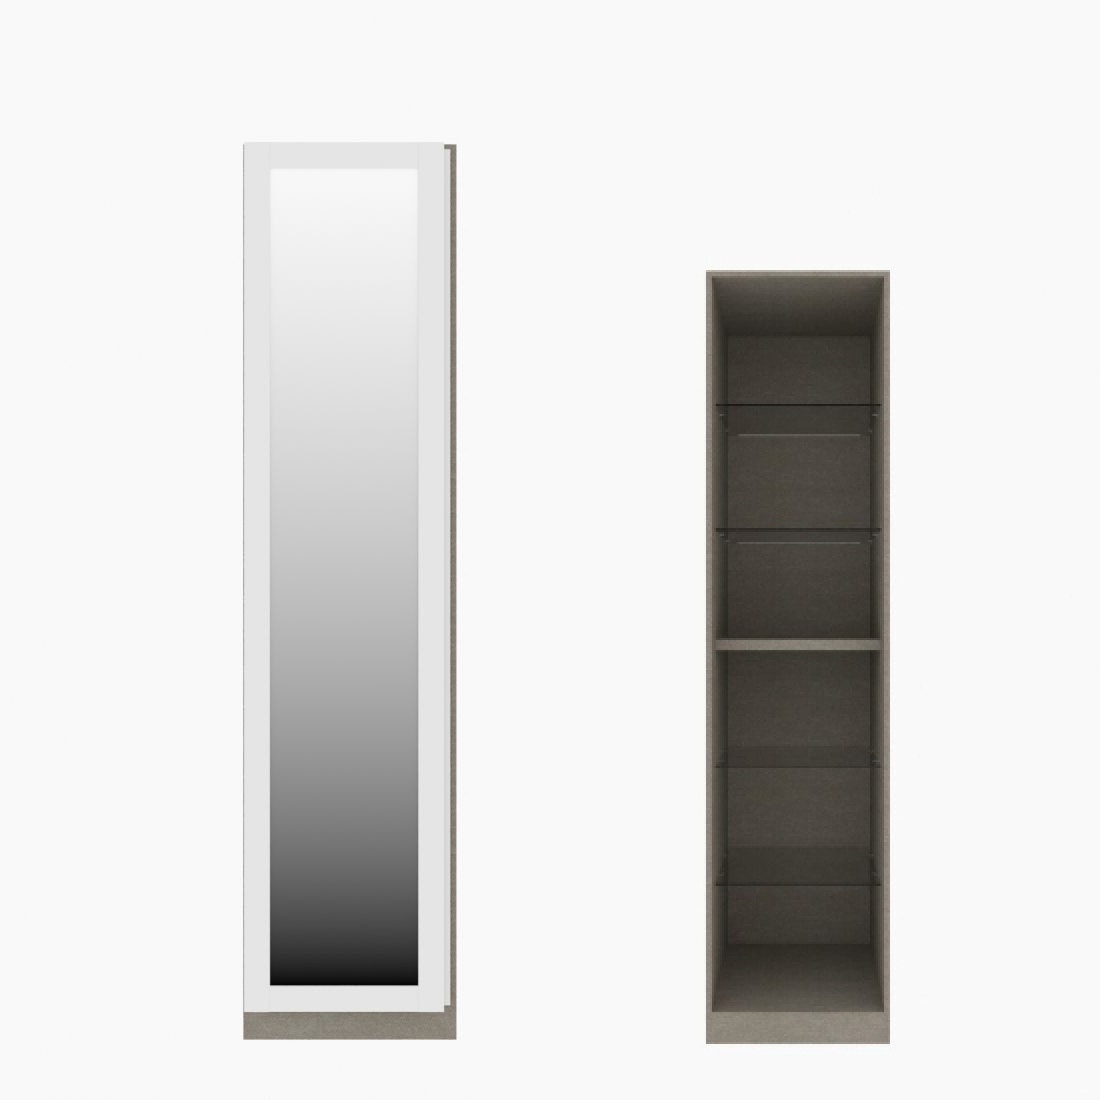 ตู้เสื้อผ้า ตู้โชว์ชั้นกระจก OP-H (หน้าบานเปิดซ้าย) ขนาด 50 ซม. รุ่น Blox สีขาว&กระจกเงา01